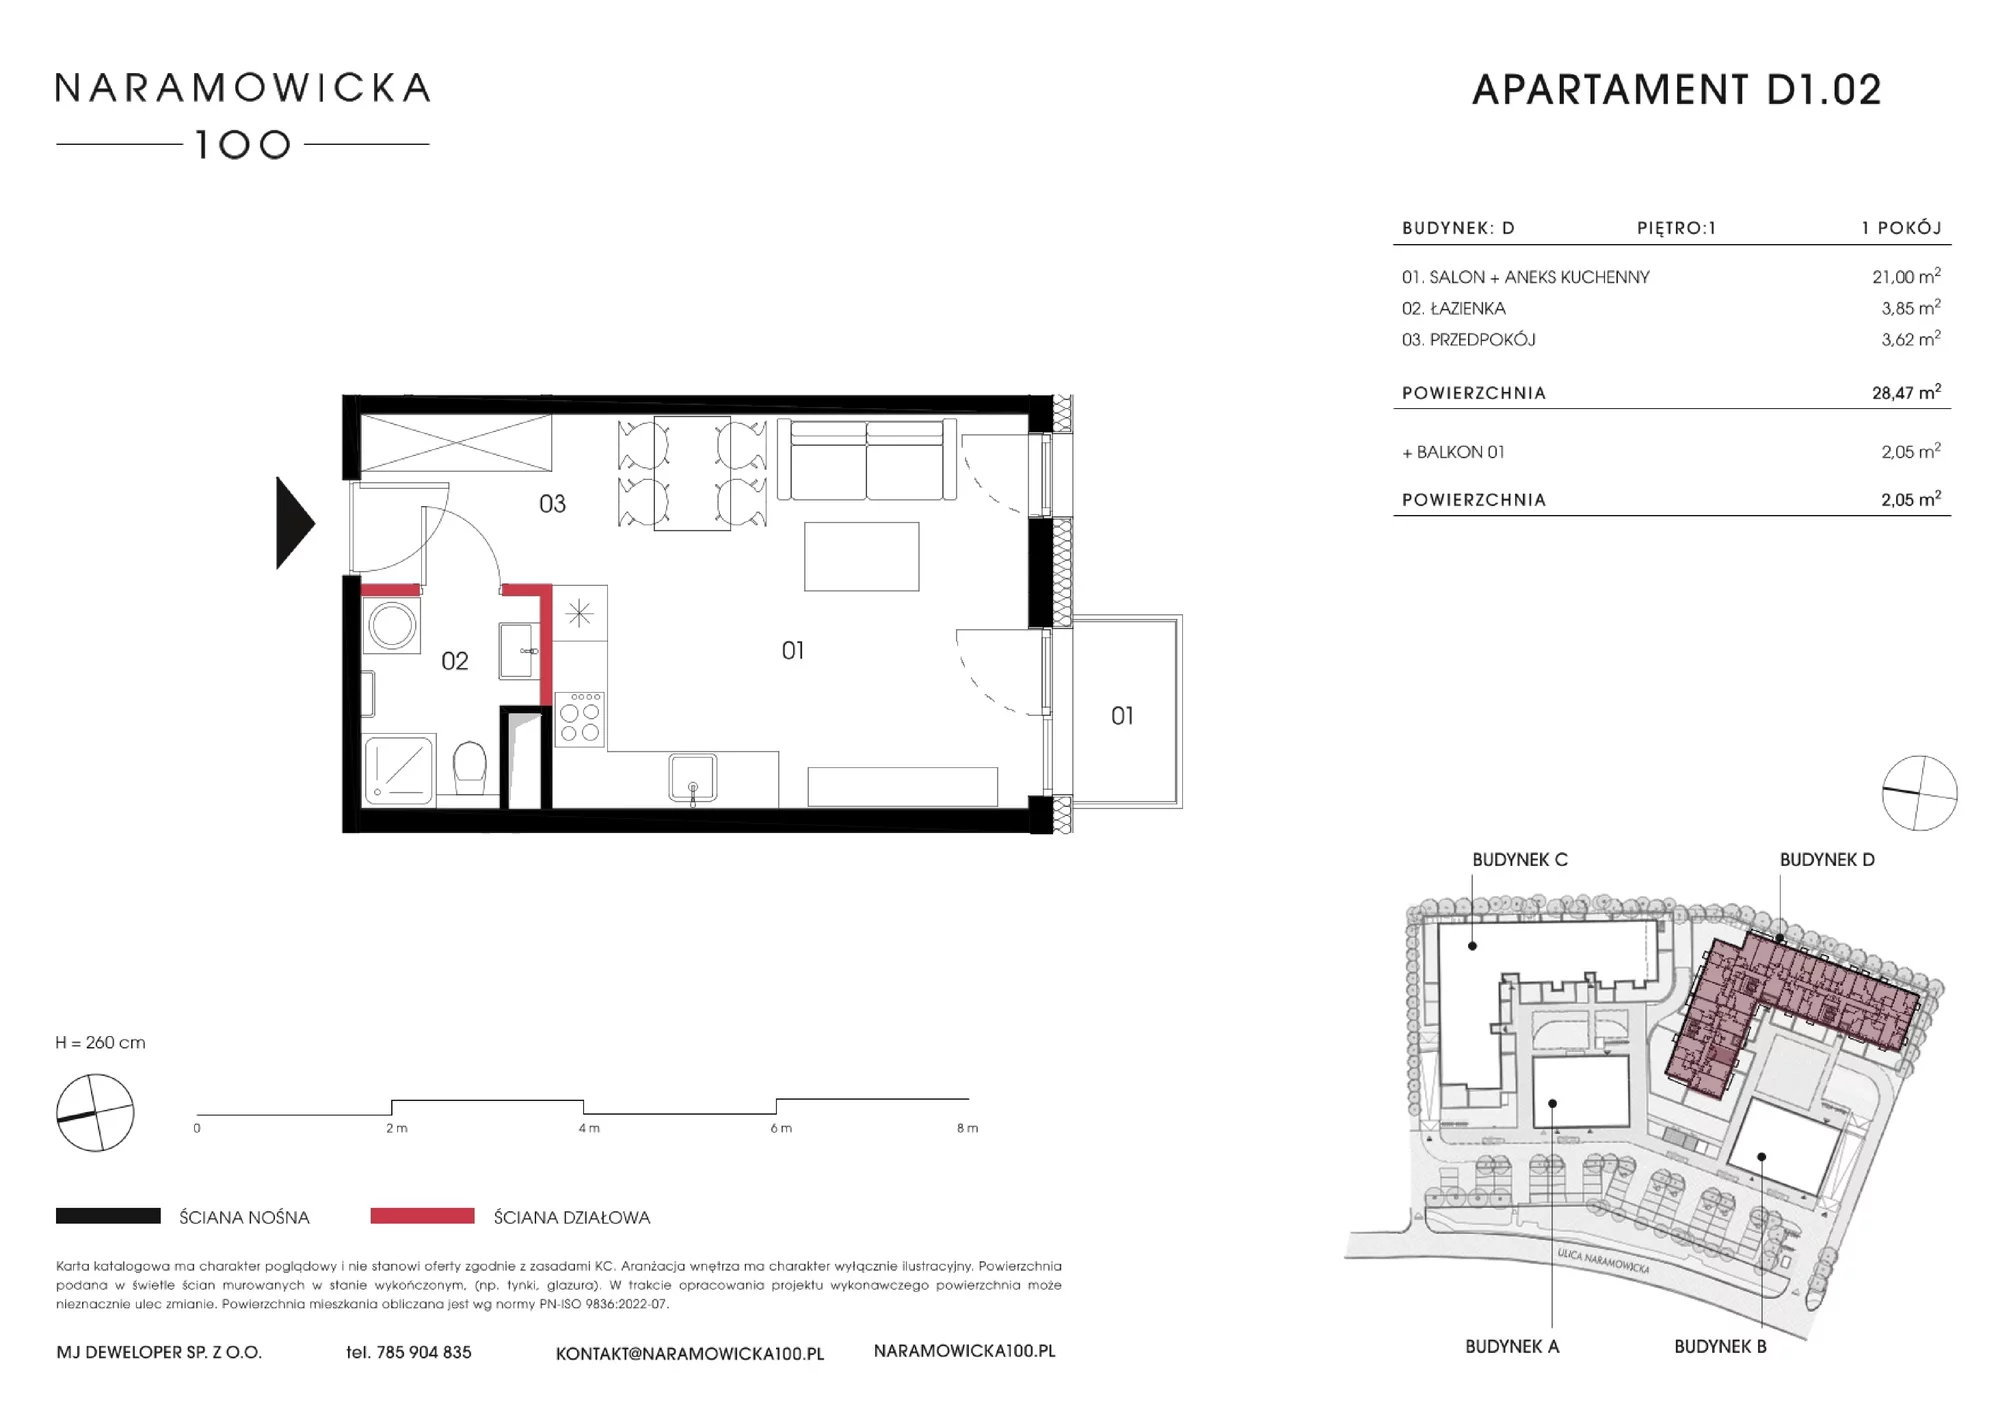 Mieszkanie 28,35 m², piętro 1, oferta nr D 1.02, Naramowicka, Poznań, Winogrady, Winogrady, ul. Naramowicka 100